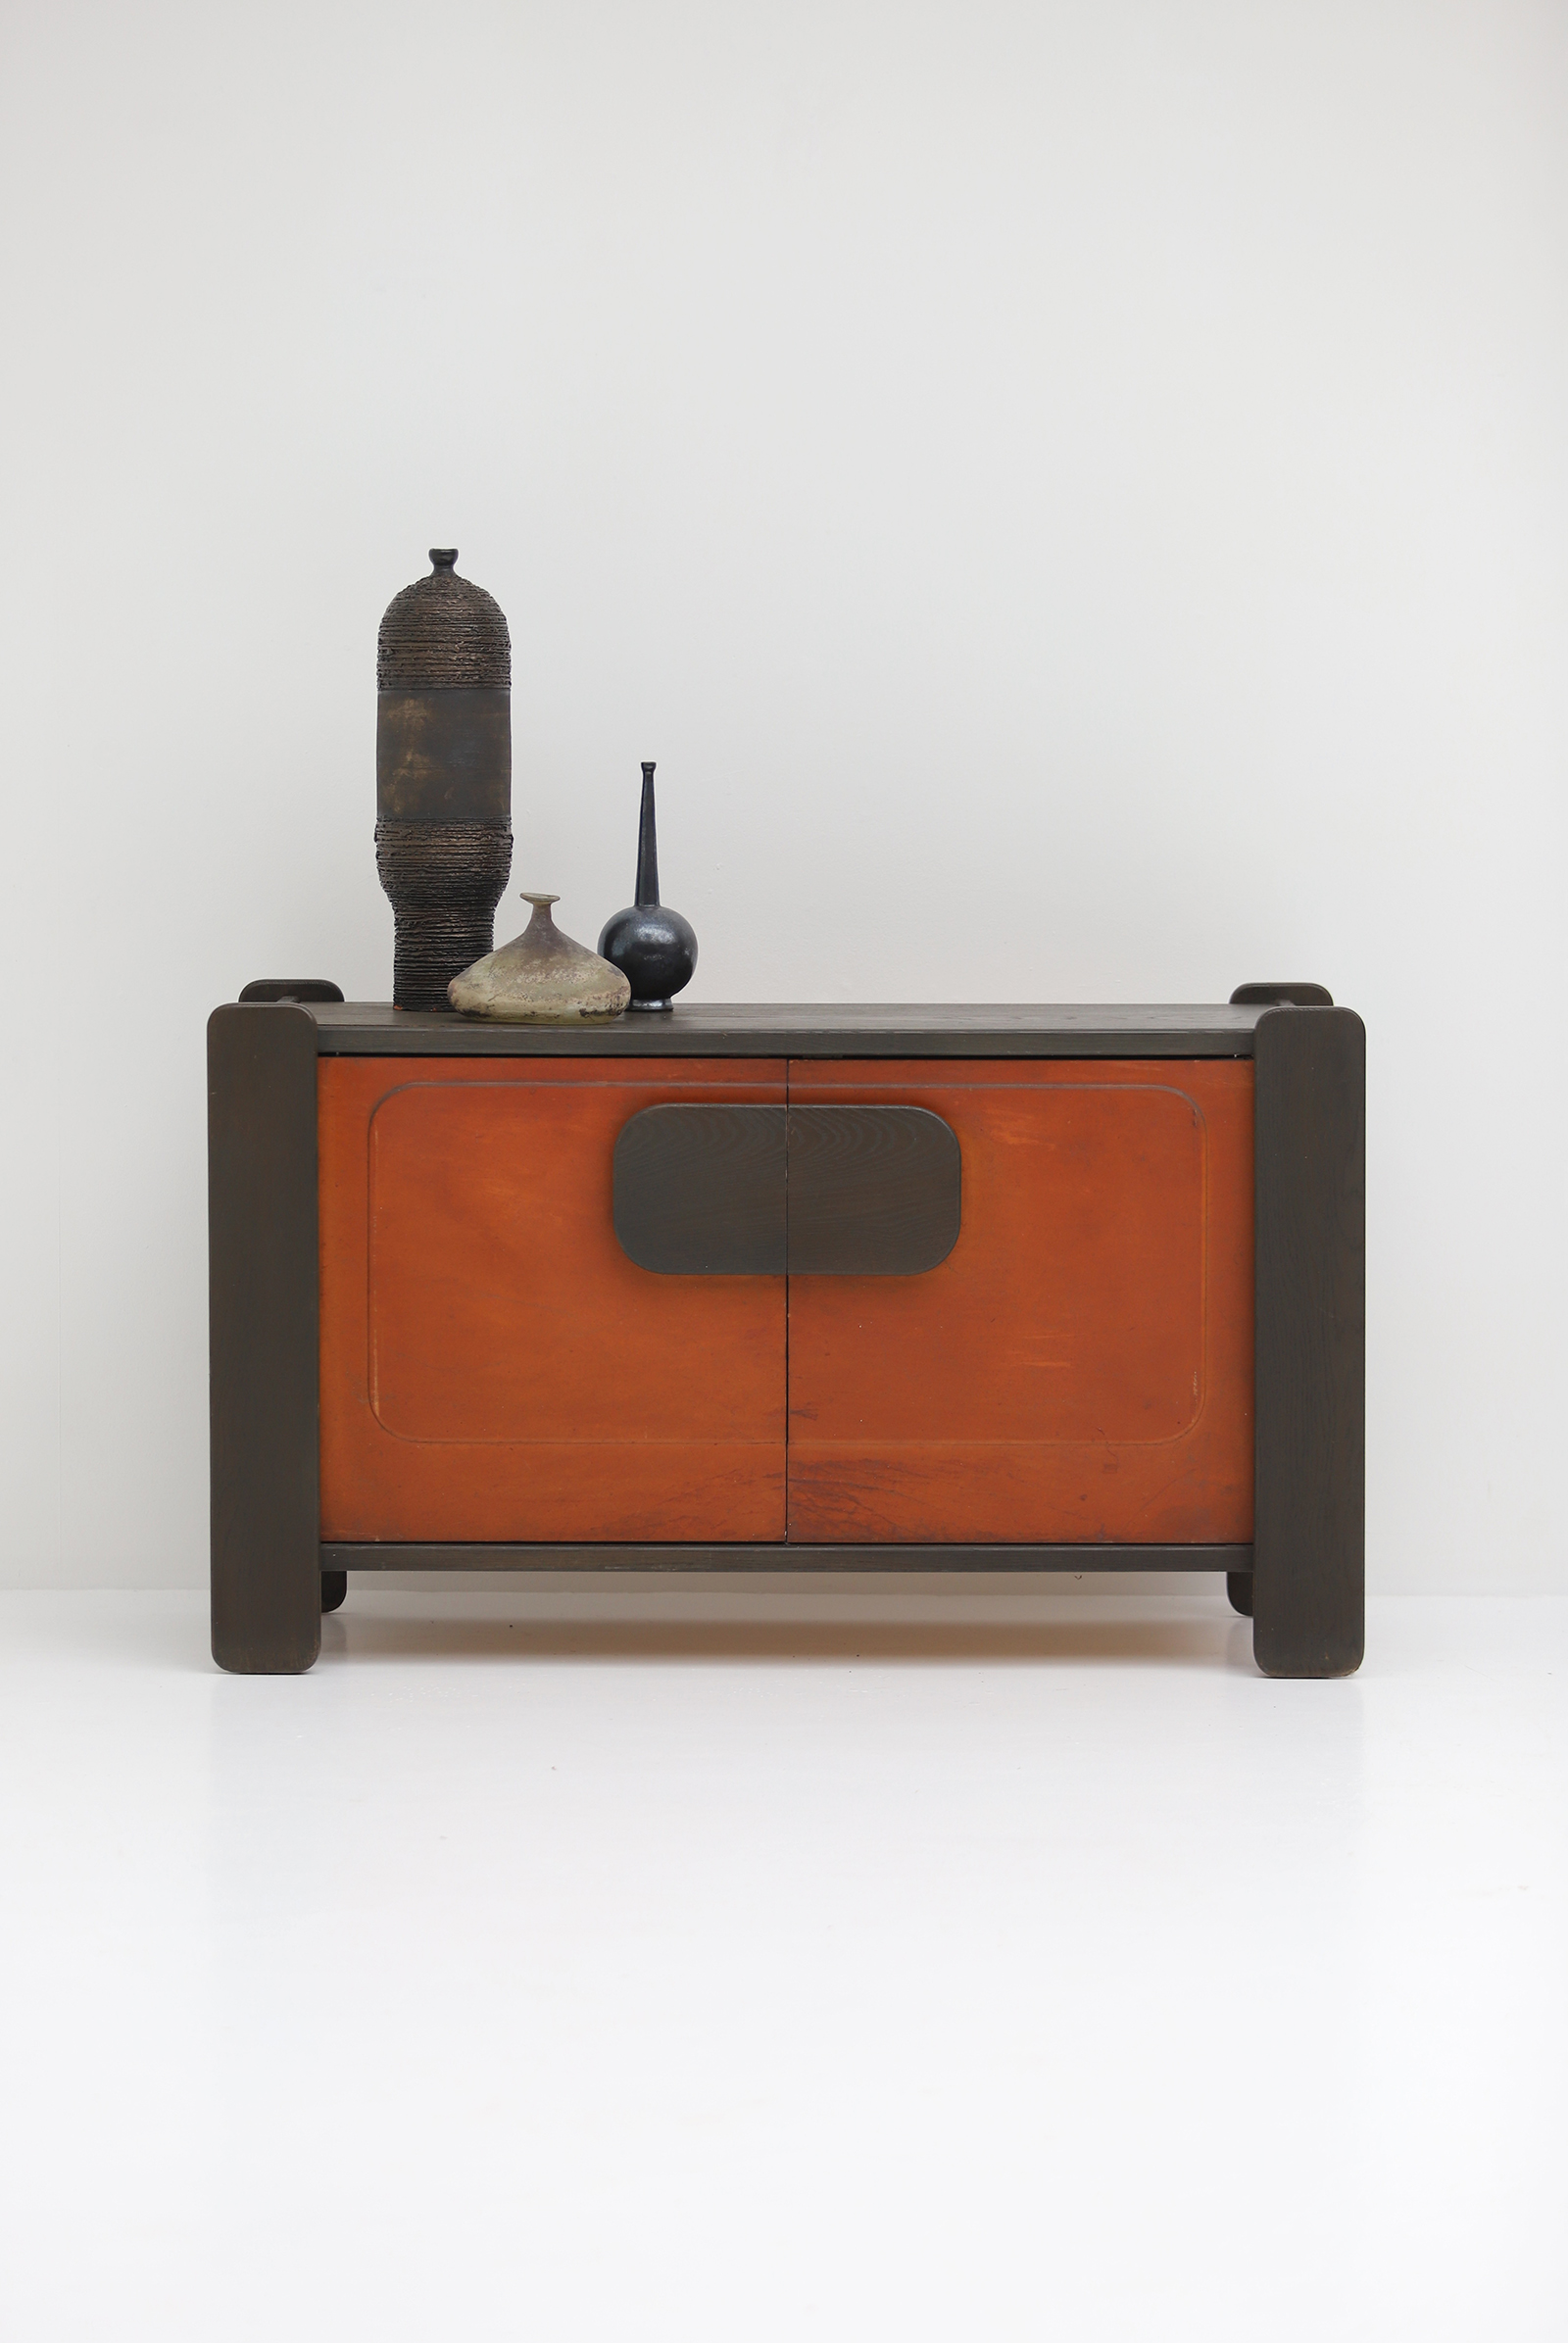 1976 Hi-Plan Design Furniture Cabinet with Leather Doorsimage 1